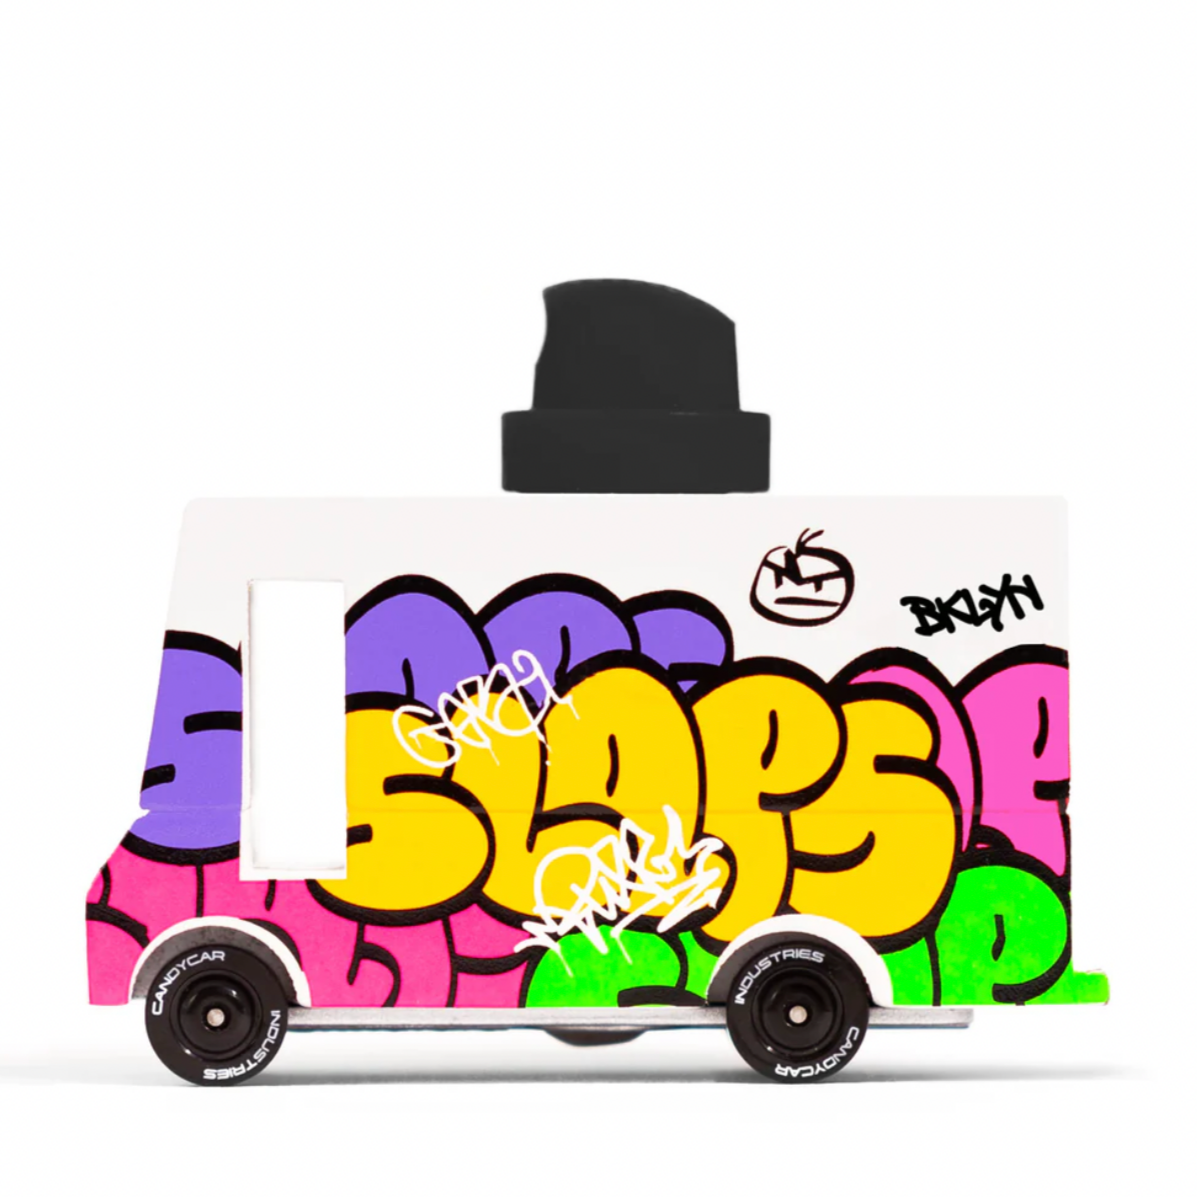 Graffiti Black Van